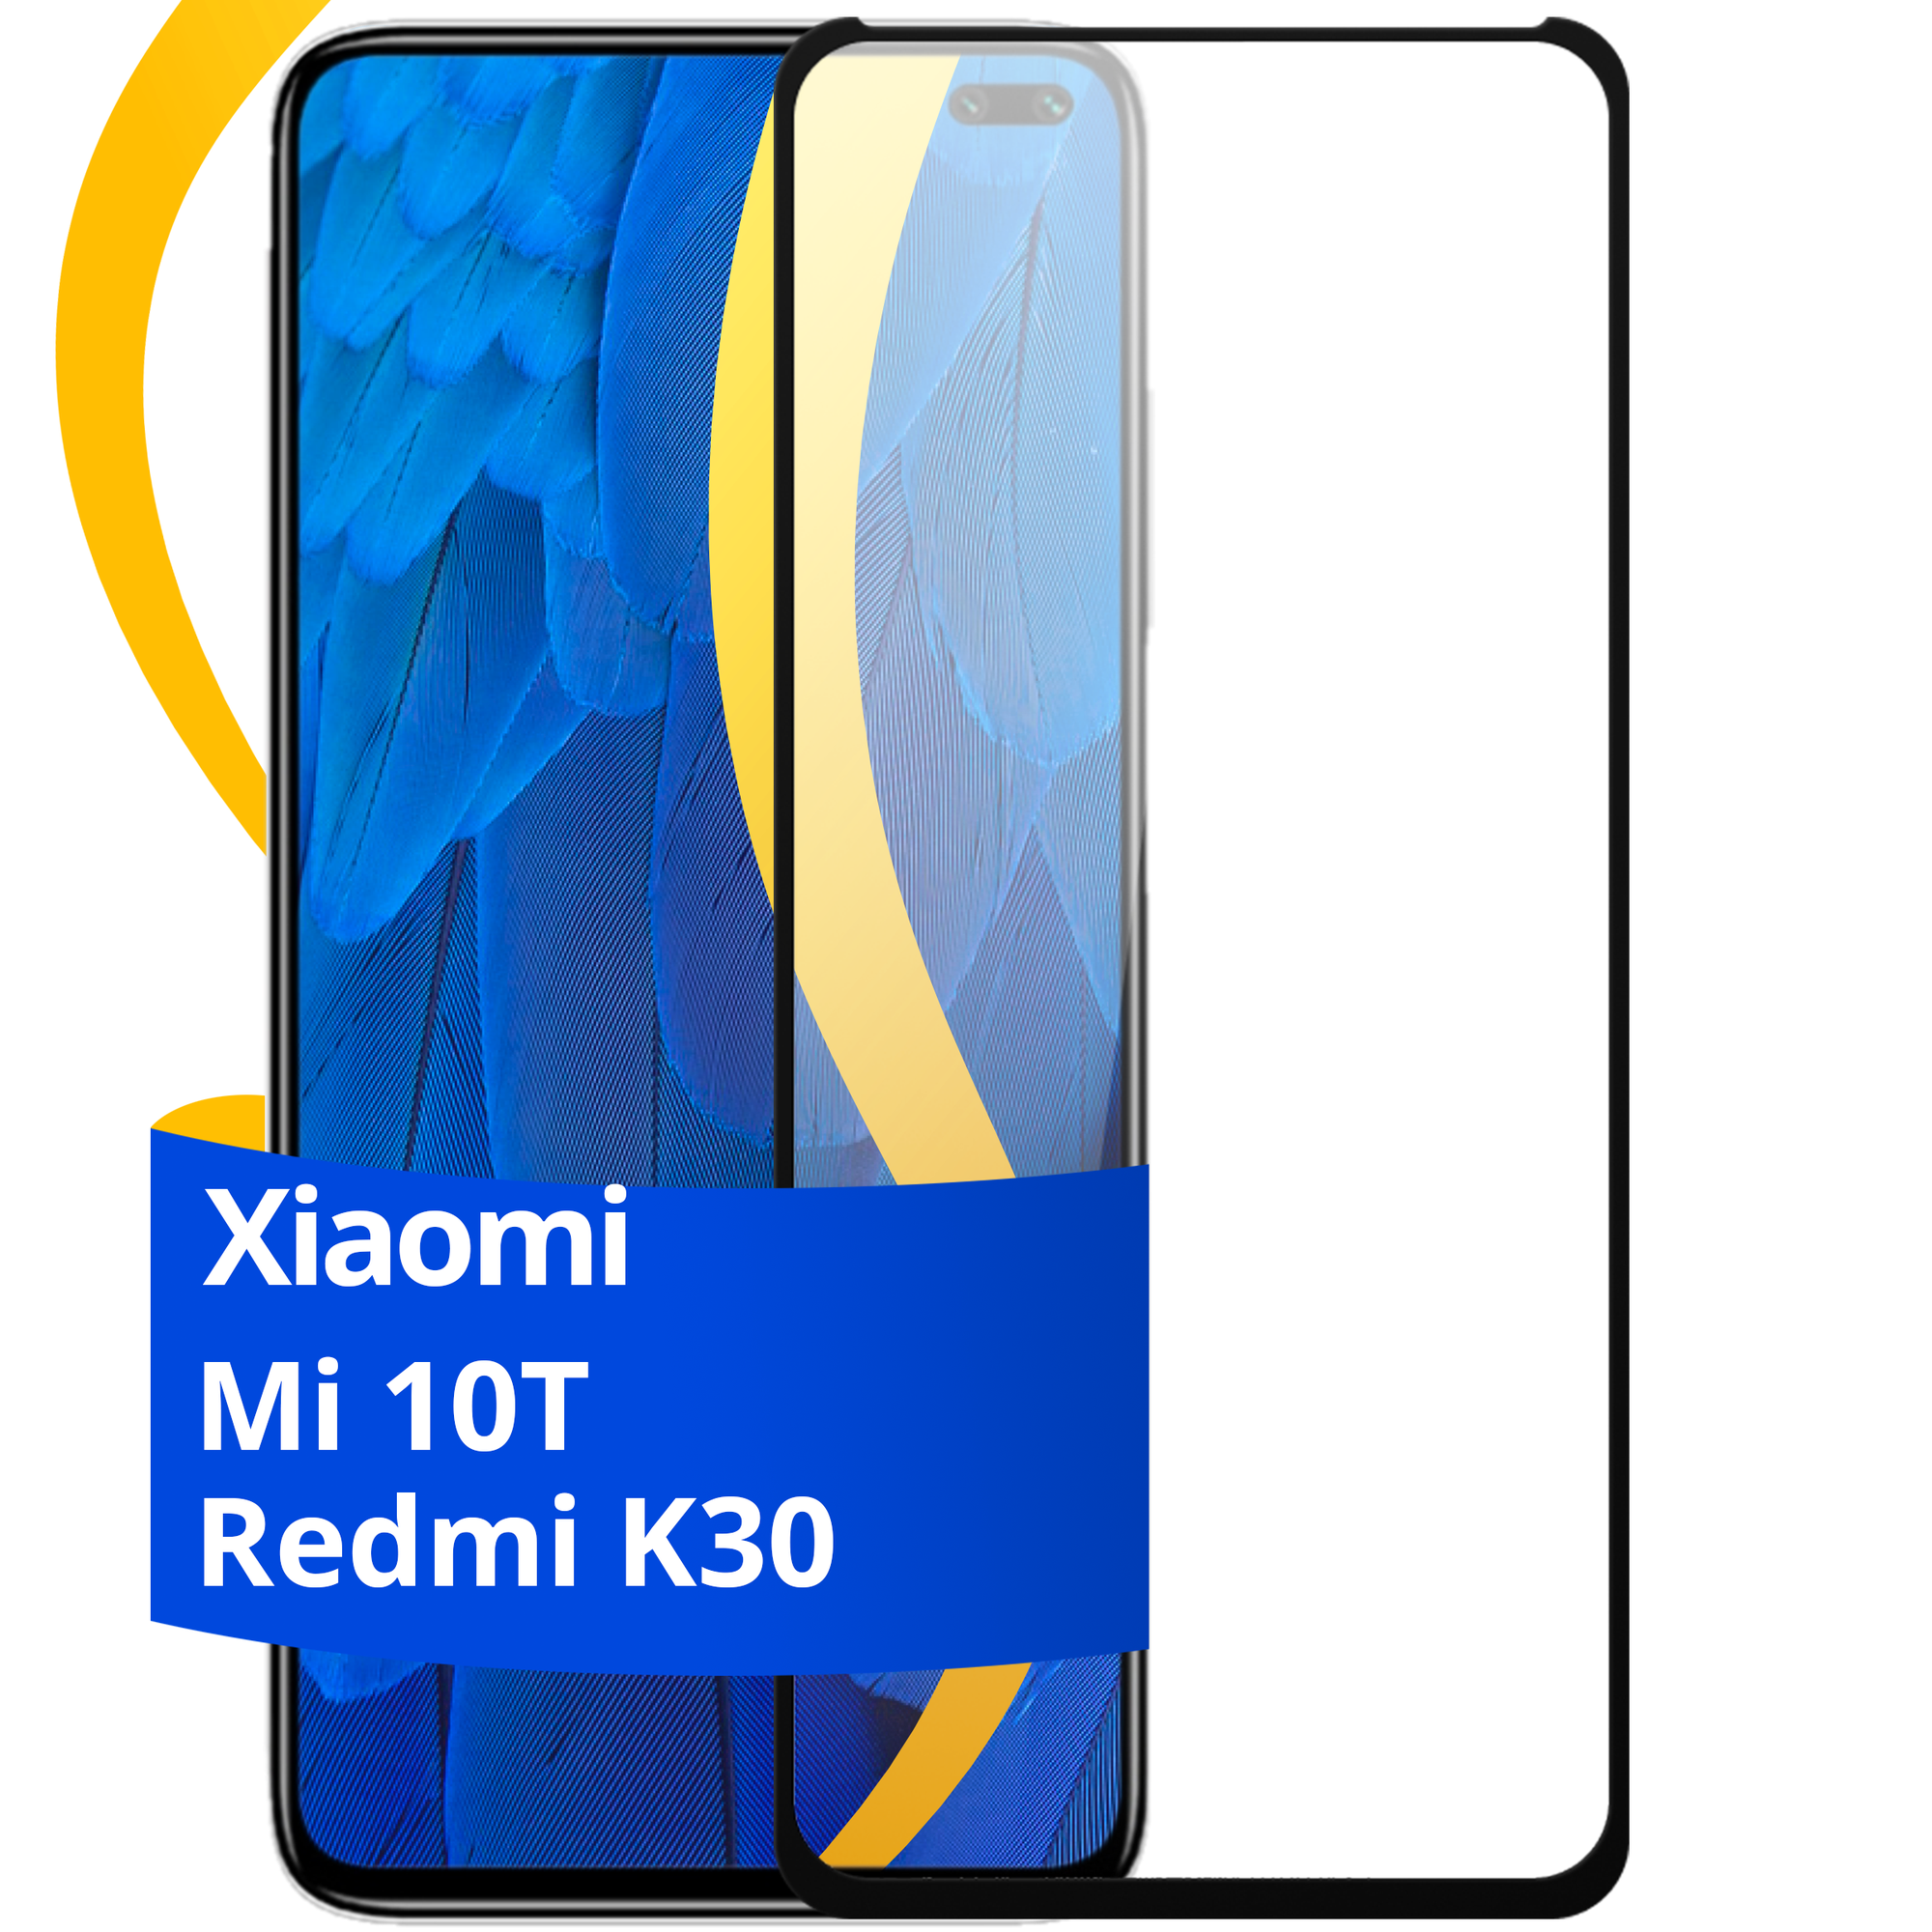 Глянцевое защитное стекло для телефона Xiaomi Mi 10T и Redmi K30 / Противоударное стекло с олеофобным покрытием на смартфон Сяоми Ми 10Т и Редми К30